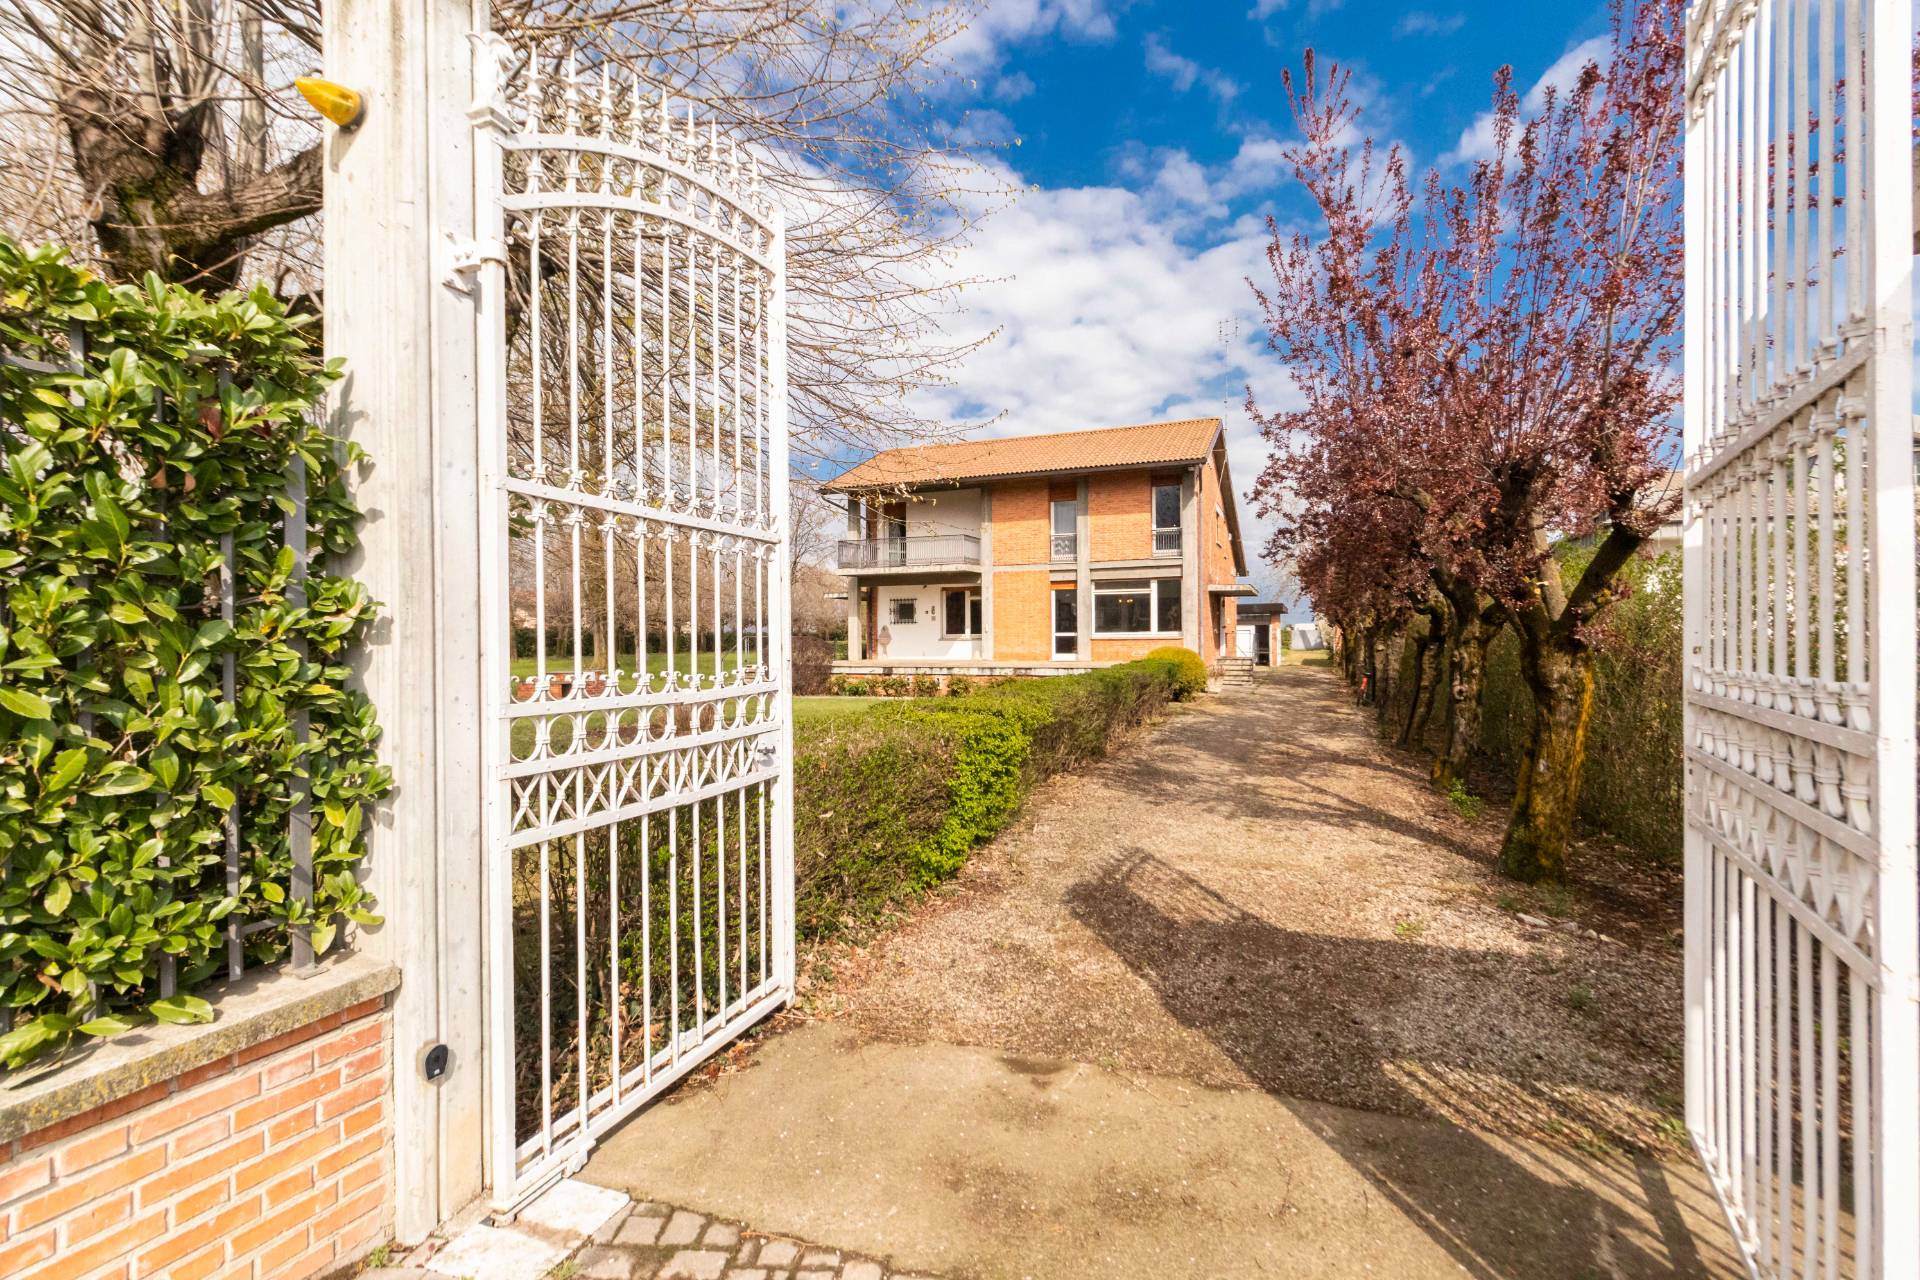 Villa in vendita a Margarita, 8 locali, prezzo € 450.000 | PortaleAgenzieImmobiliari.it